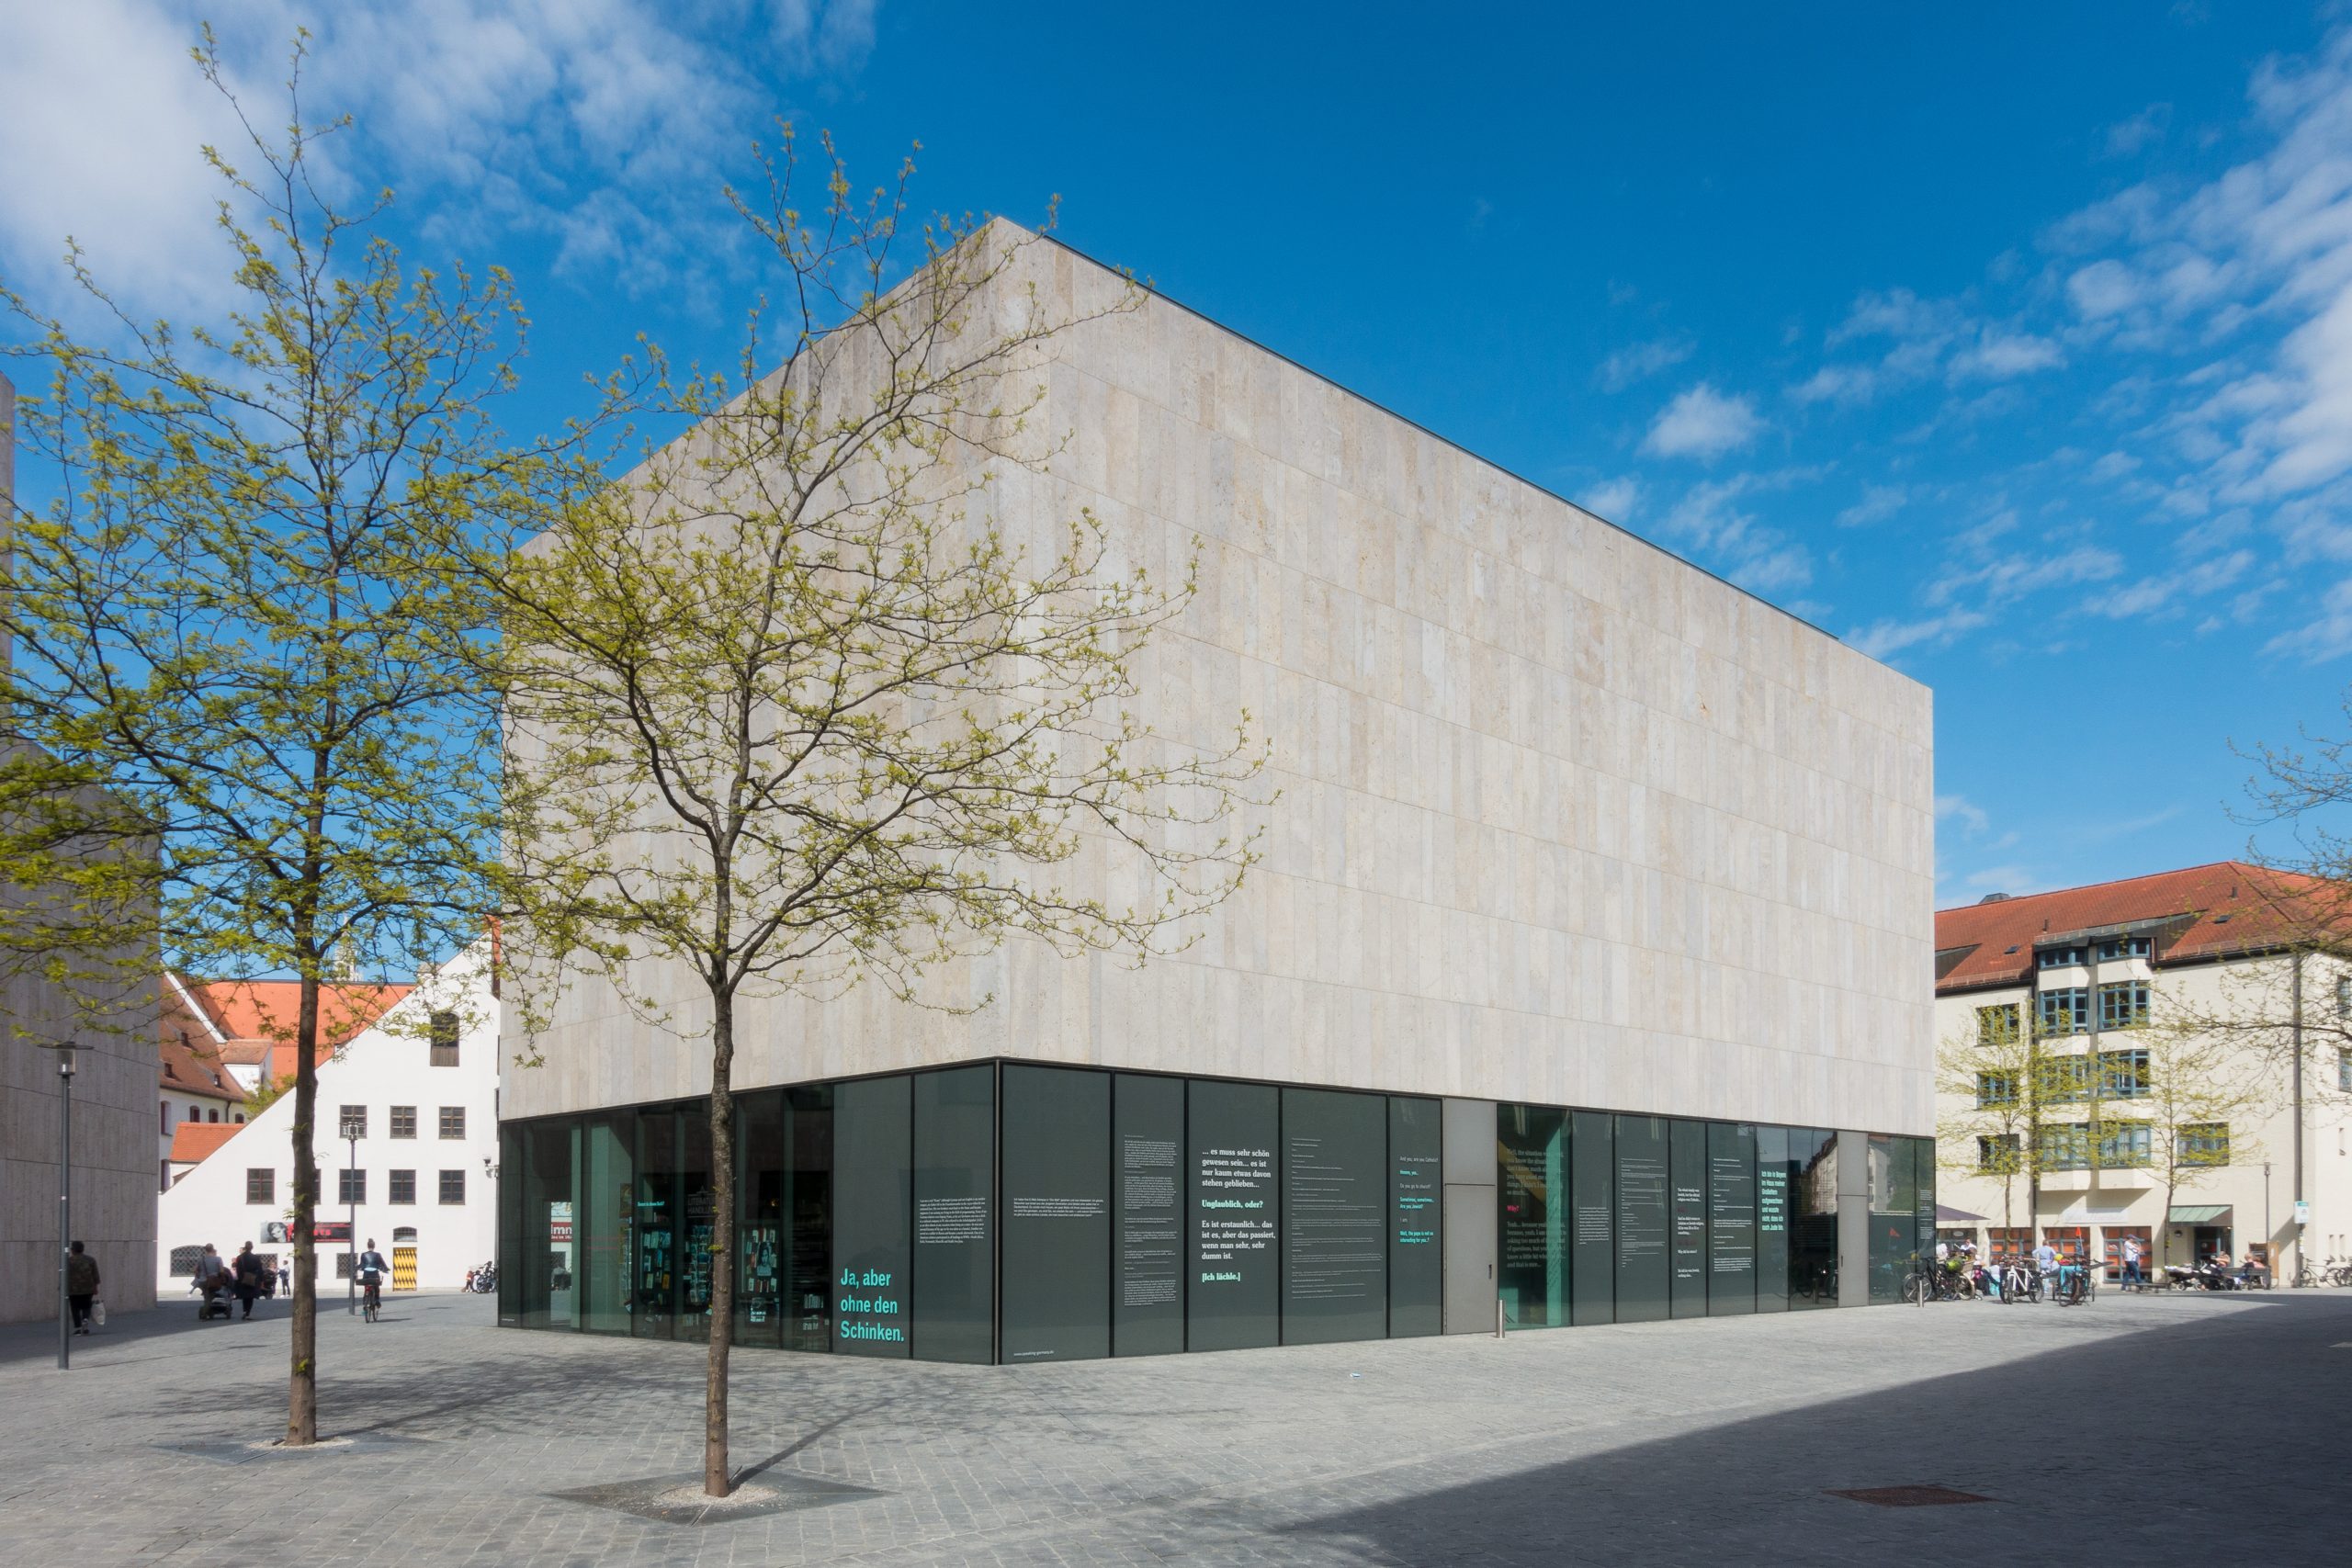 Das Jüdische Museum München ist in einer Außenansicht bei schönem Wetter zu sehen, vorne links zwei Bäume mit frischem Laub.